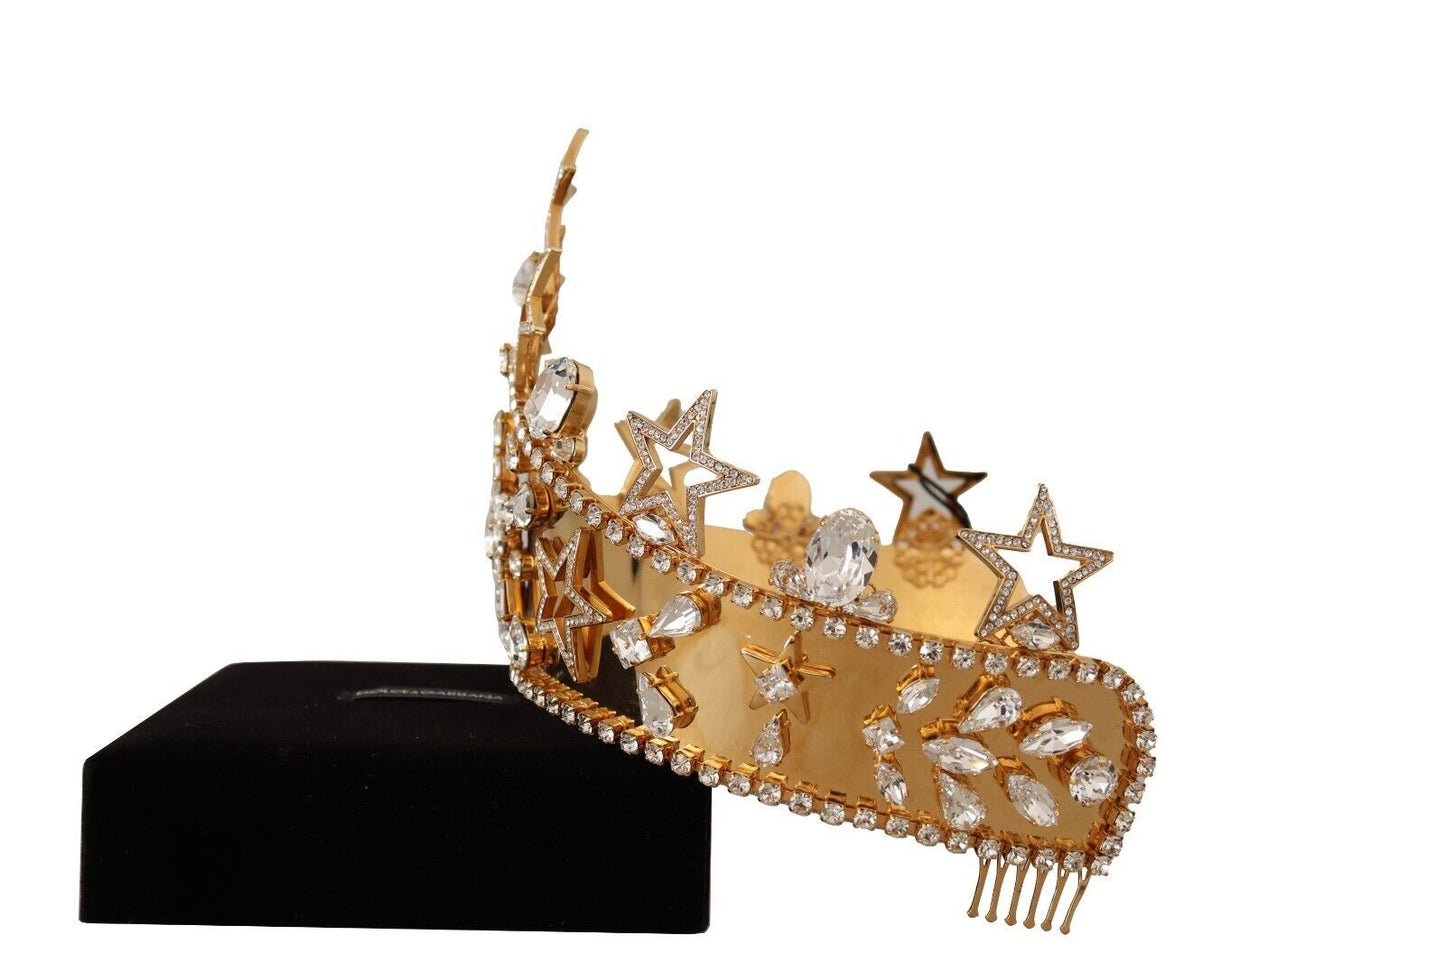 Dolce & Gabbana Gold Crystal Star Strass Crown Logo Frauen Tiara Diadem